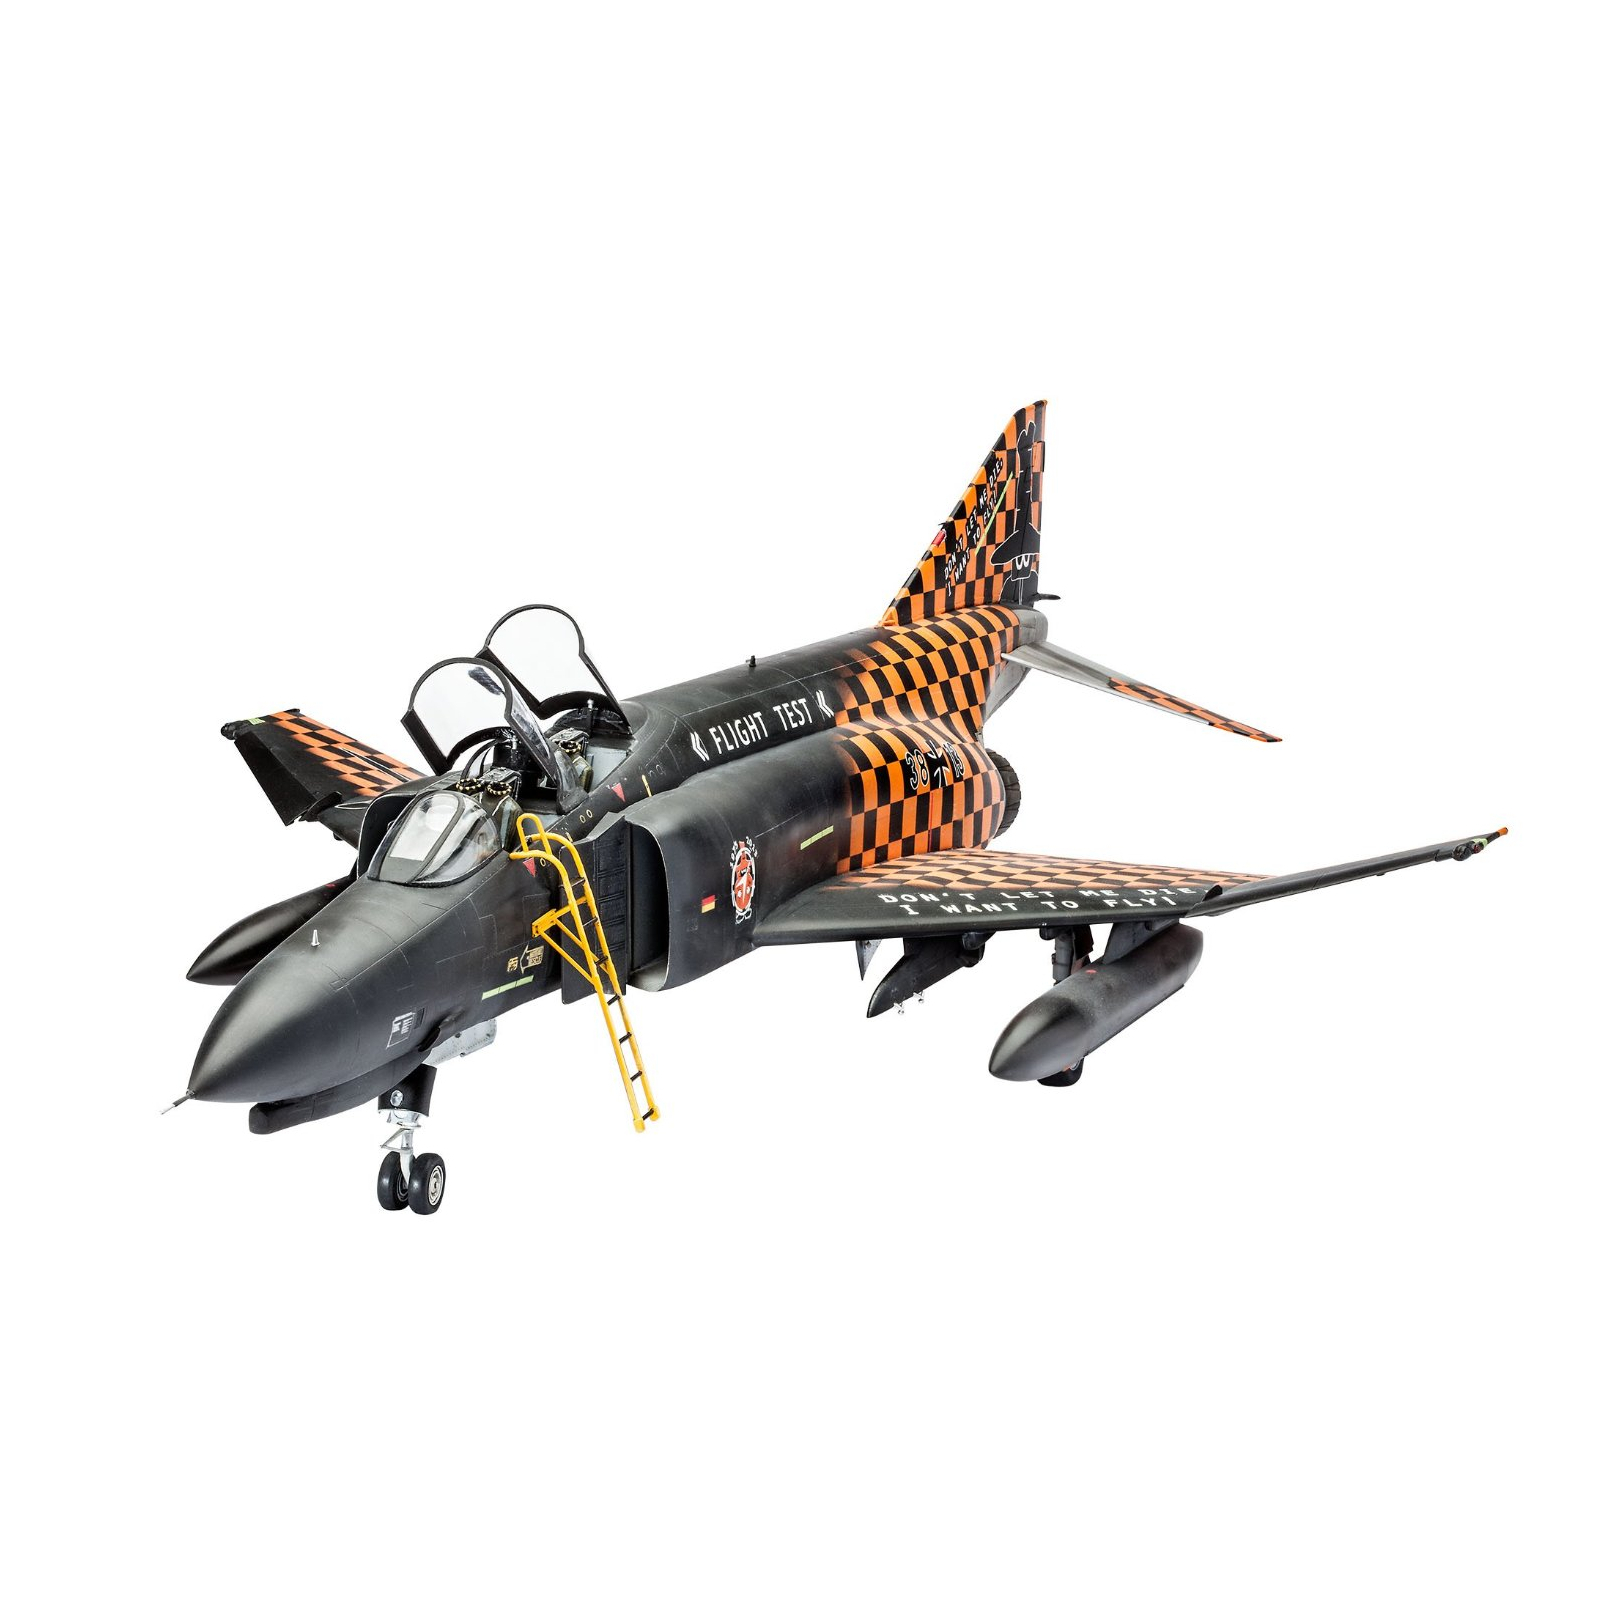 Сборная модель Revell Многоцелевой истребитель F-4F Phantom WTD 61 1:32 (4895) изображение 2